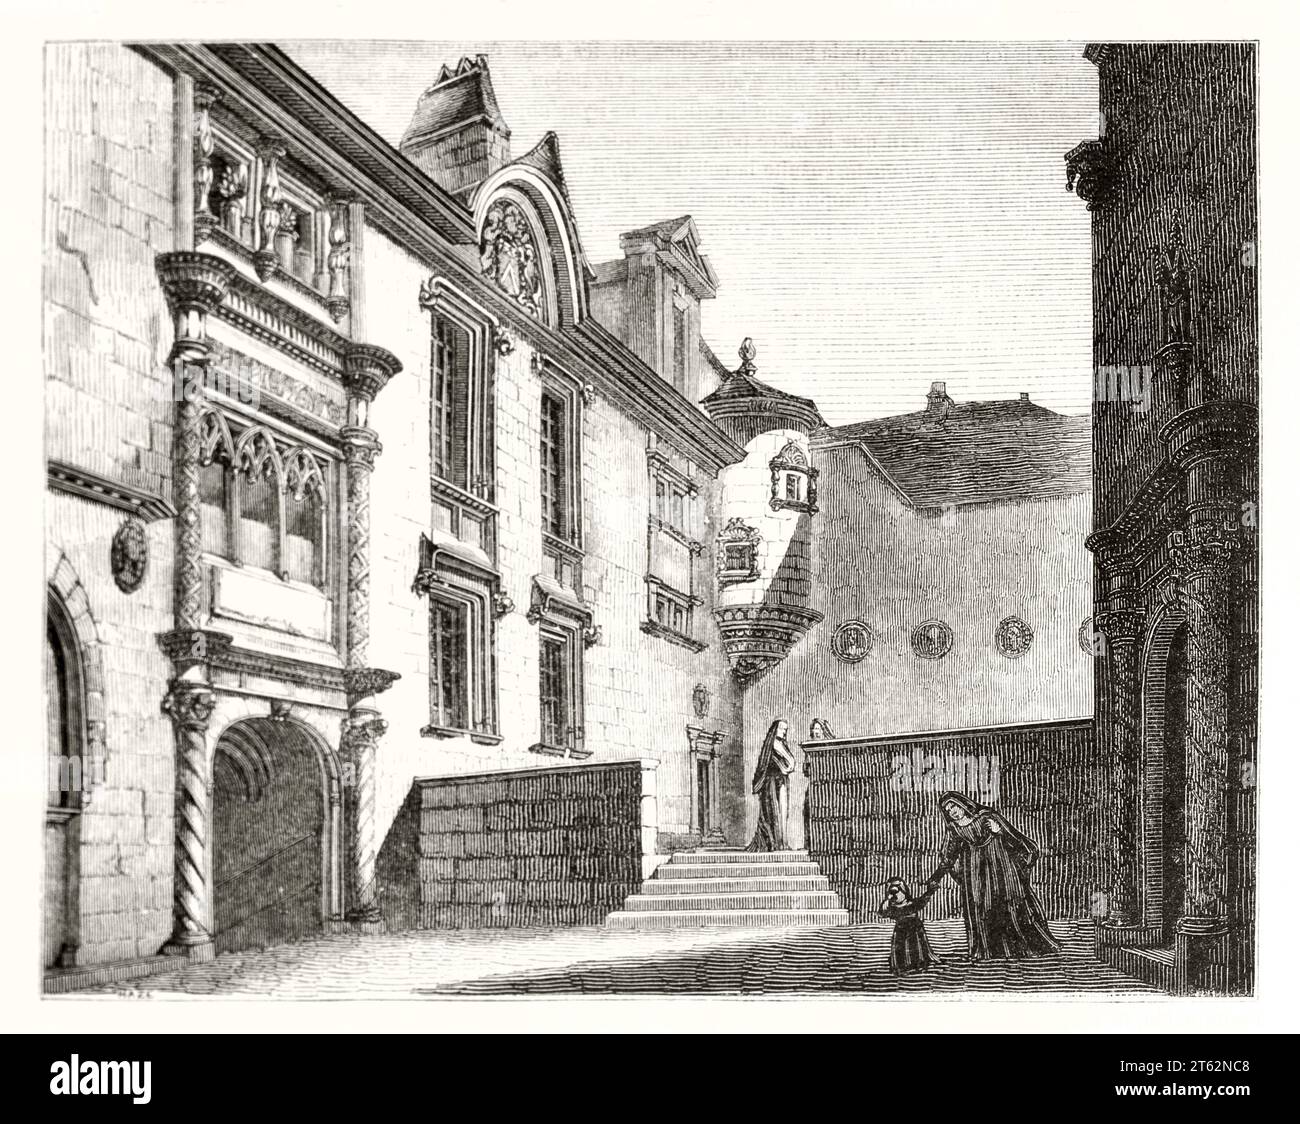 Vue ancienne de la maison l'Allemand, Bruges, Belgique. Par auteur non identifié, publ. Sur magasin pittoresque, Paris, 1849 Banque D'Images